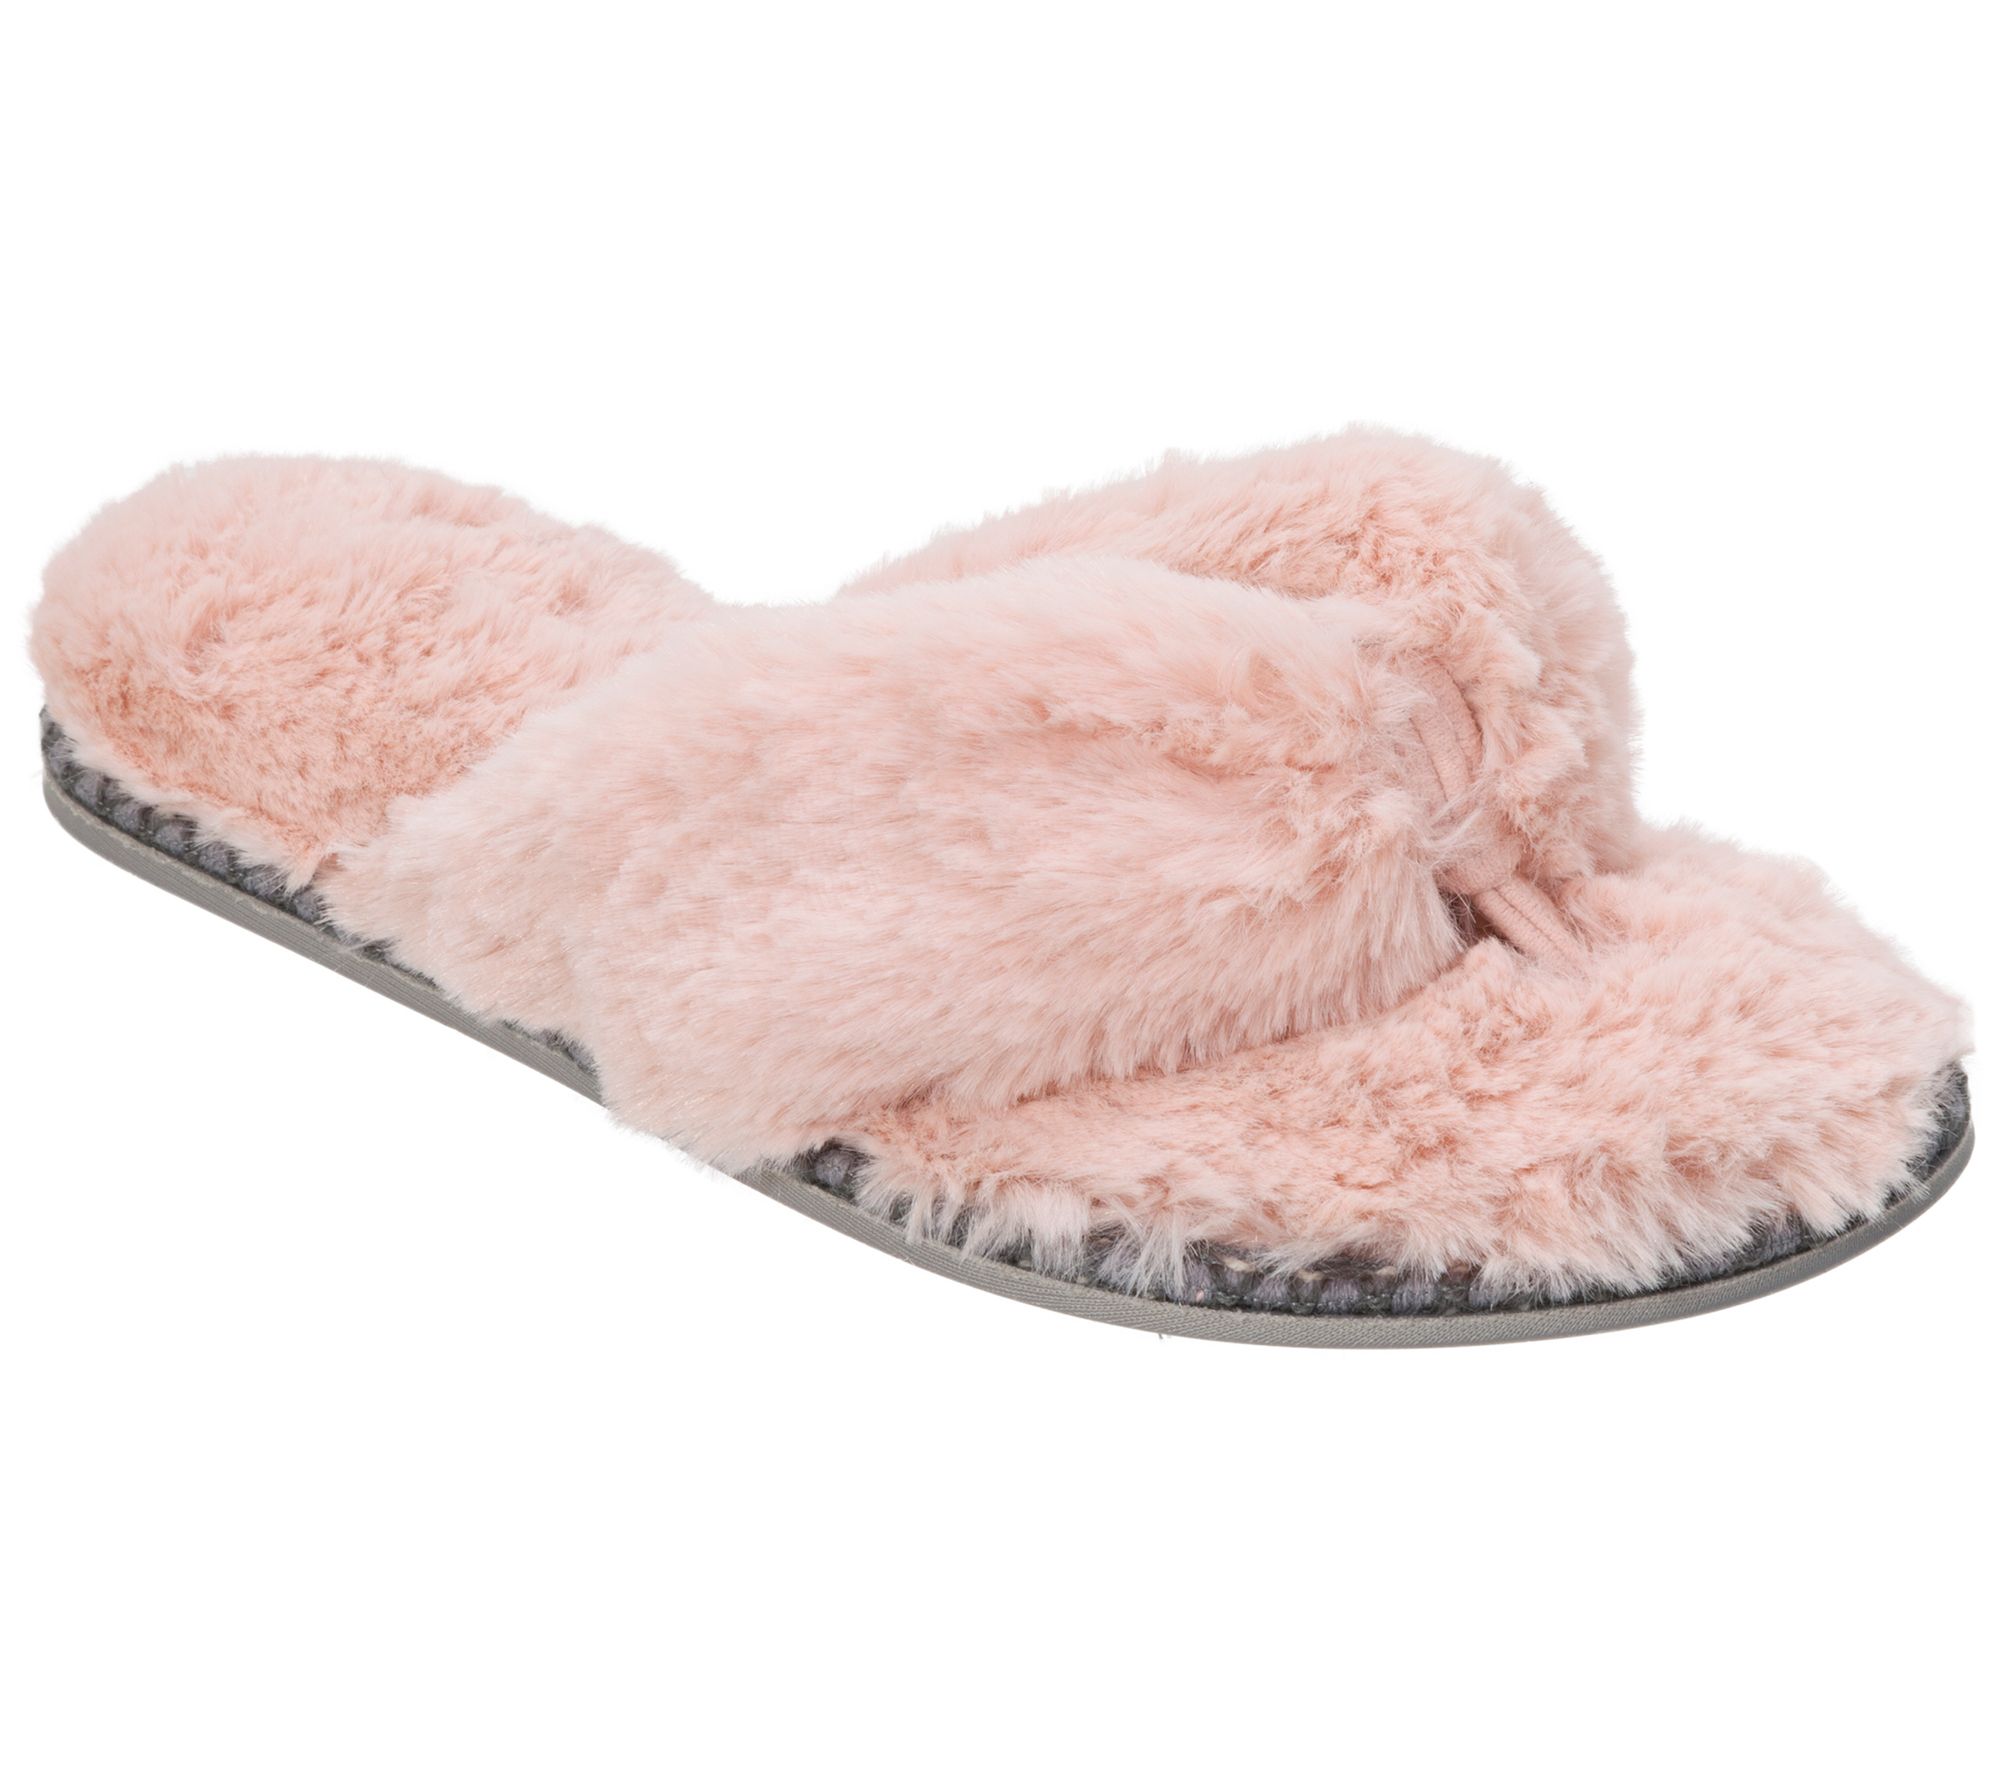 dearfoam women's thong slippers